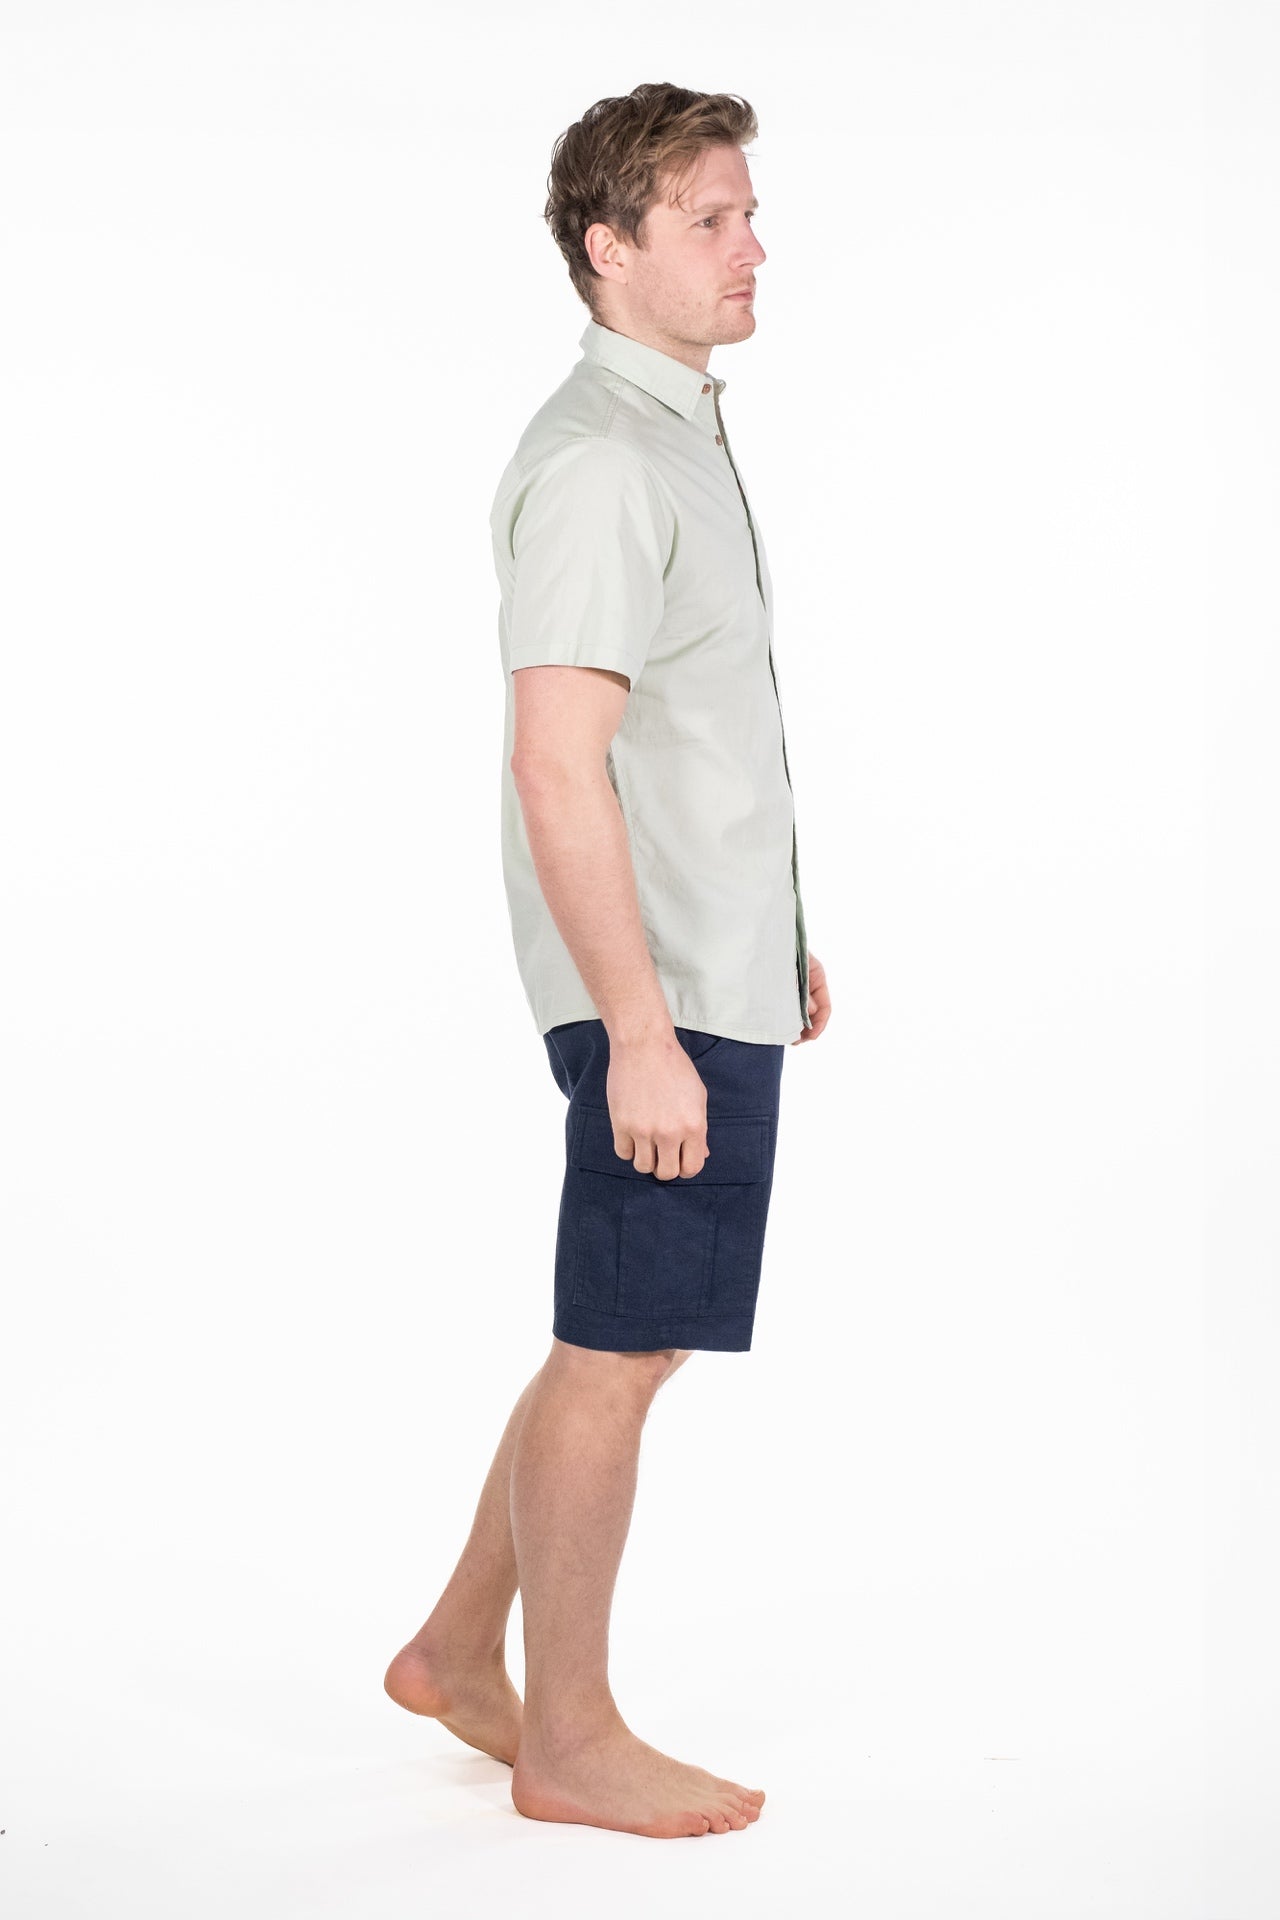 Otis Green Short Sleeved Shirt - Rupert and Buckley - Shirt